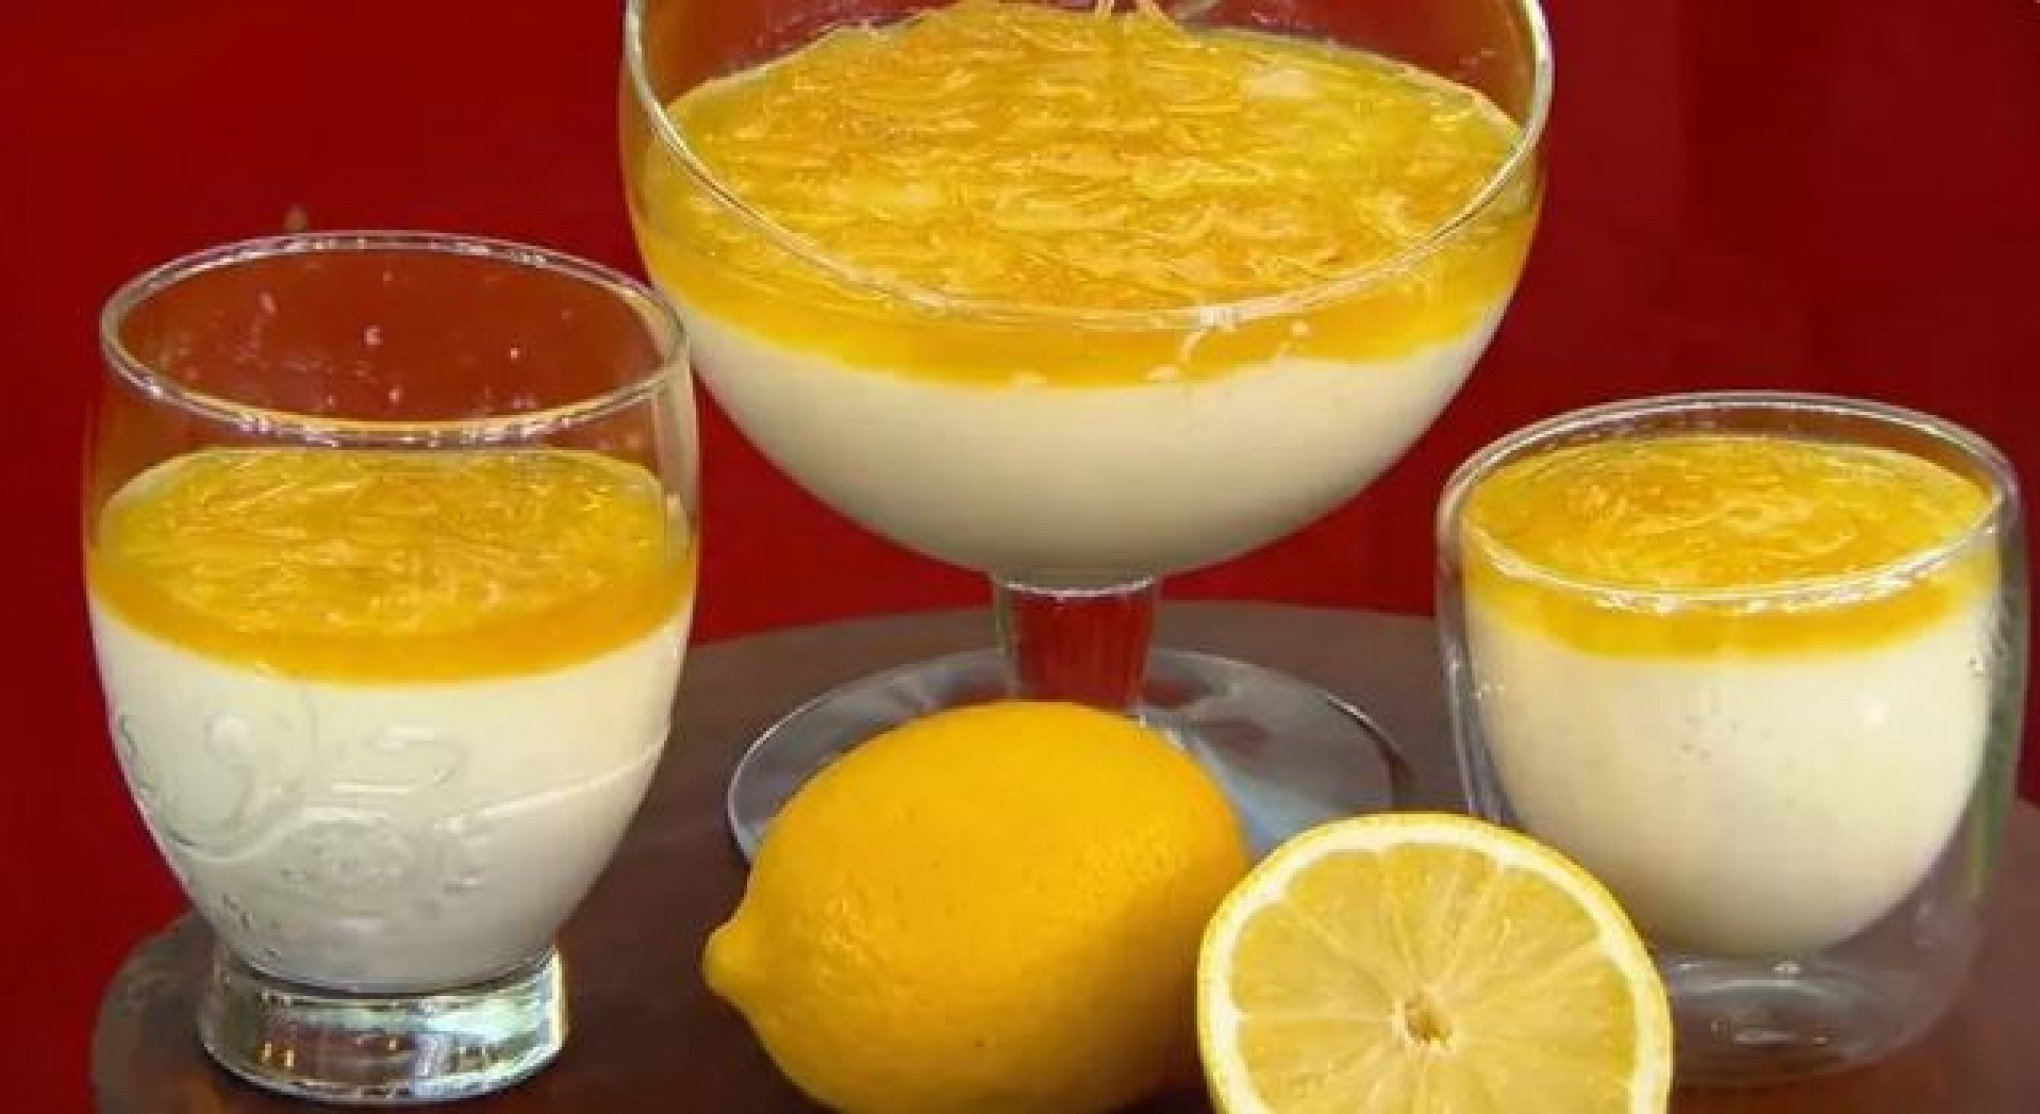 RECEITA DA ANA MARIA BRAGA: Saiba como fazer o Mousse de limão com leite em pó preparado nesta segunda-feira, 19 de fevereiro